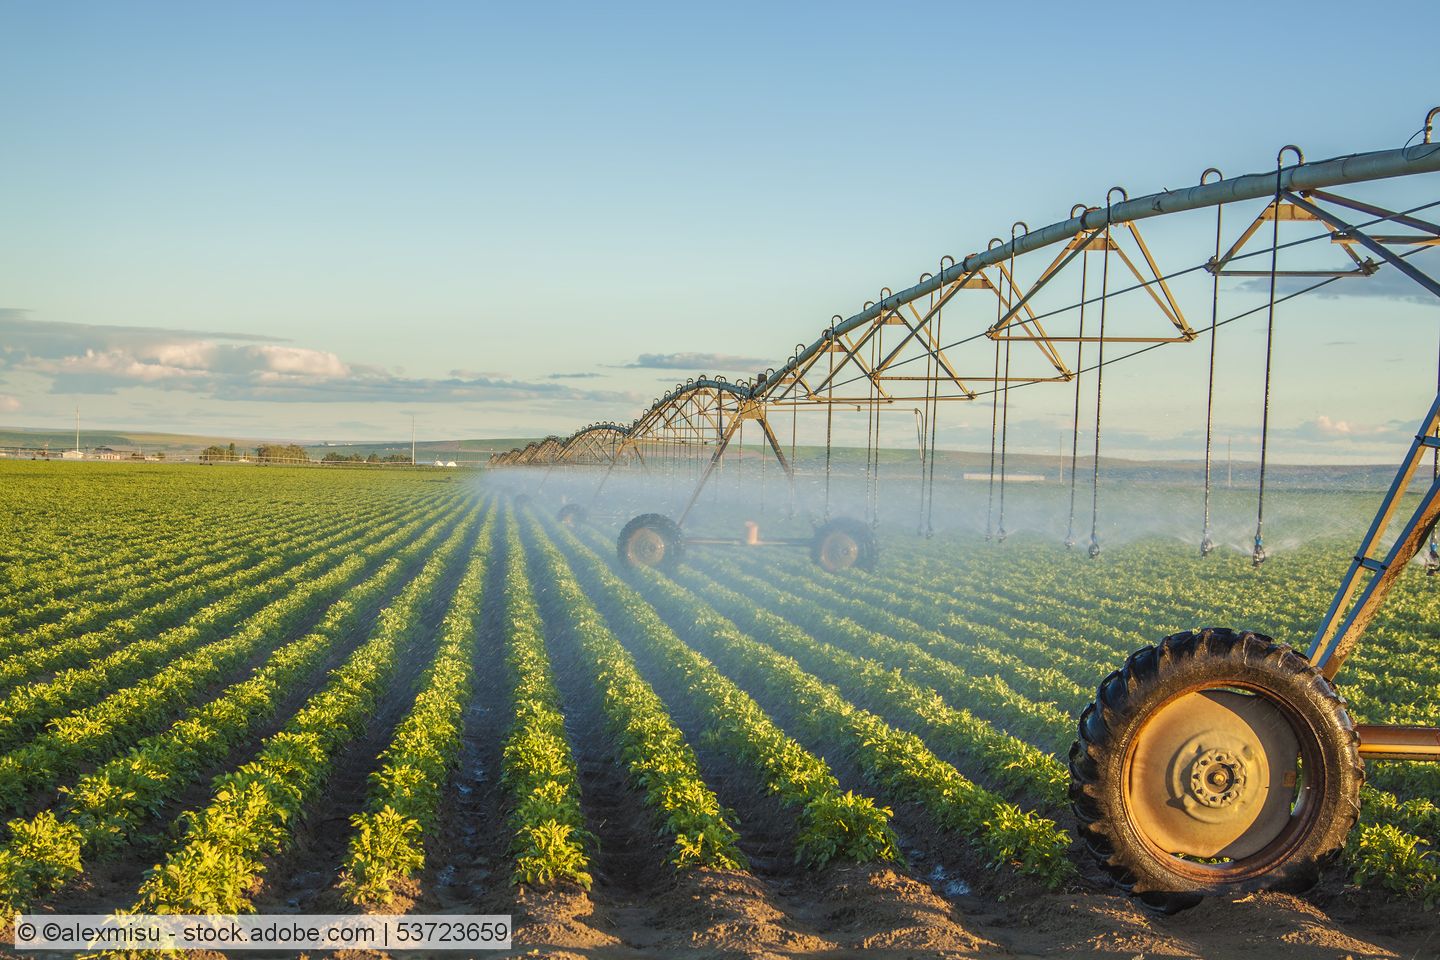 Landwirtschaftliche Bewässerungsprojekte in Bayern: Förderprogramm geht in zweite Runde